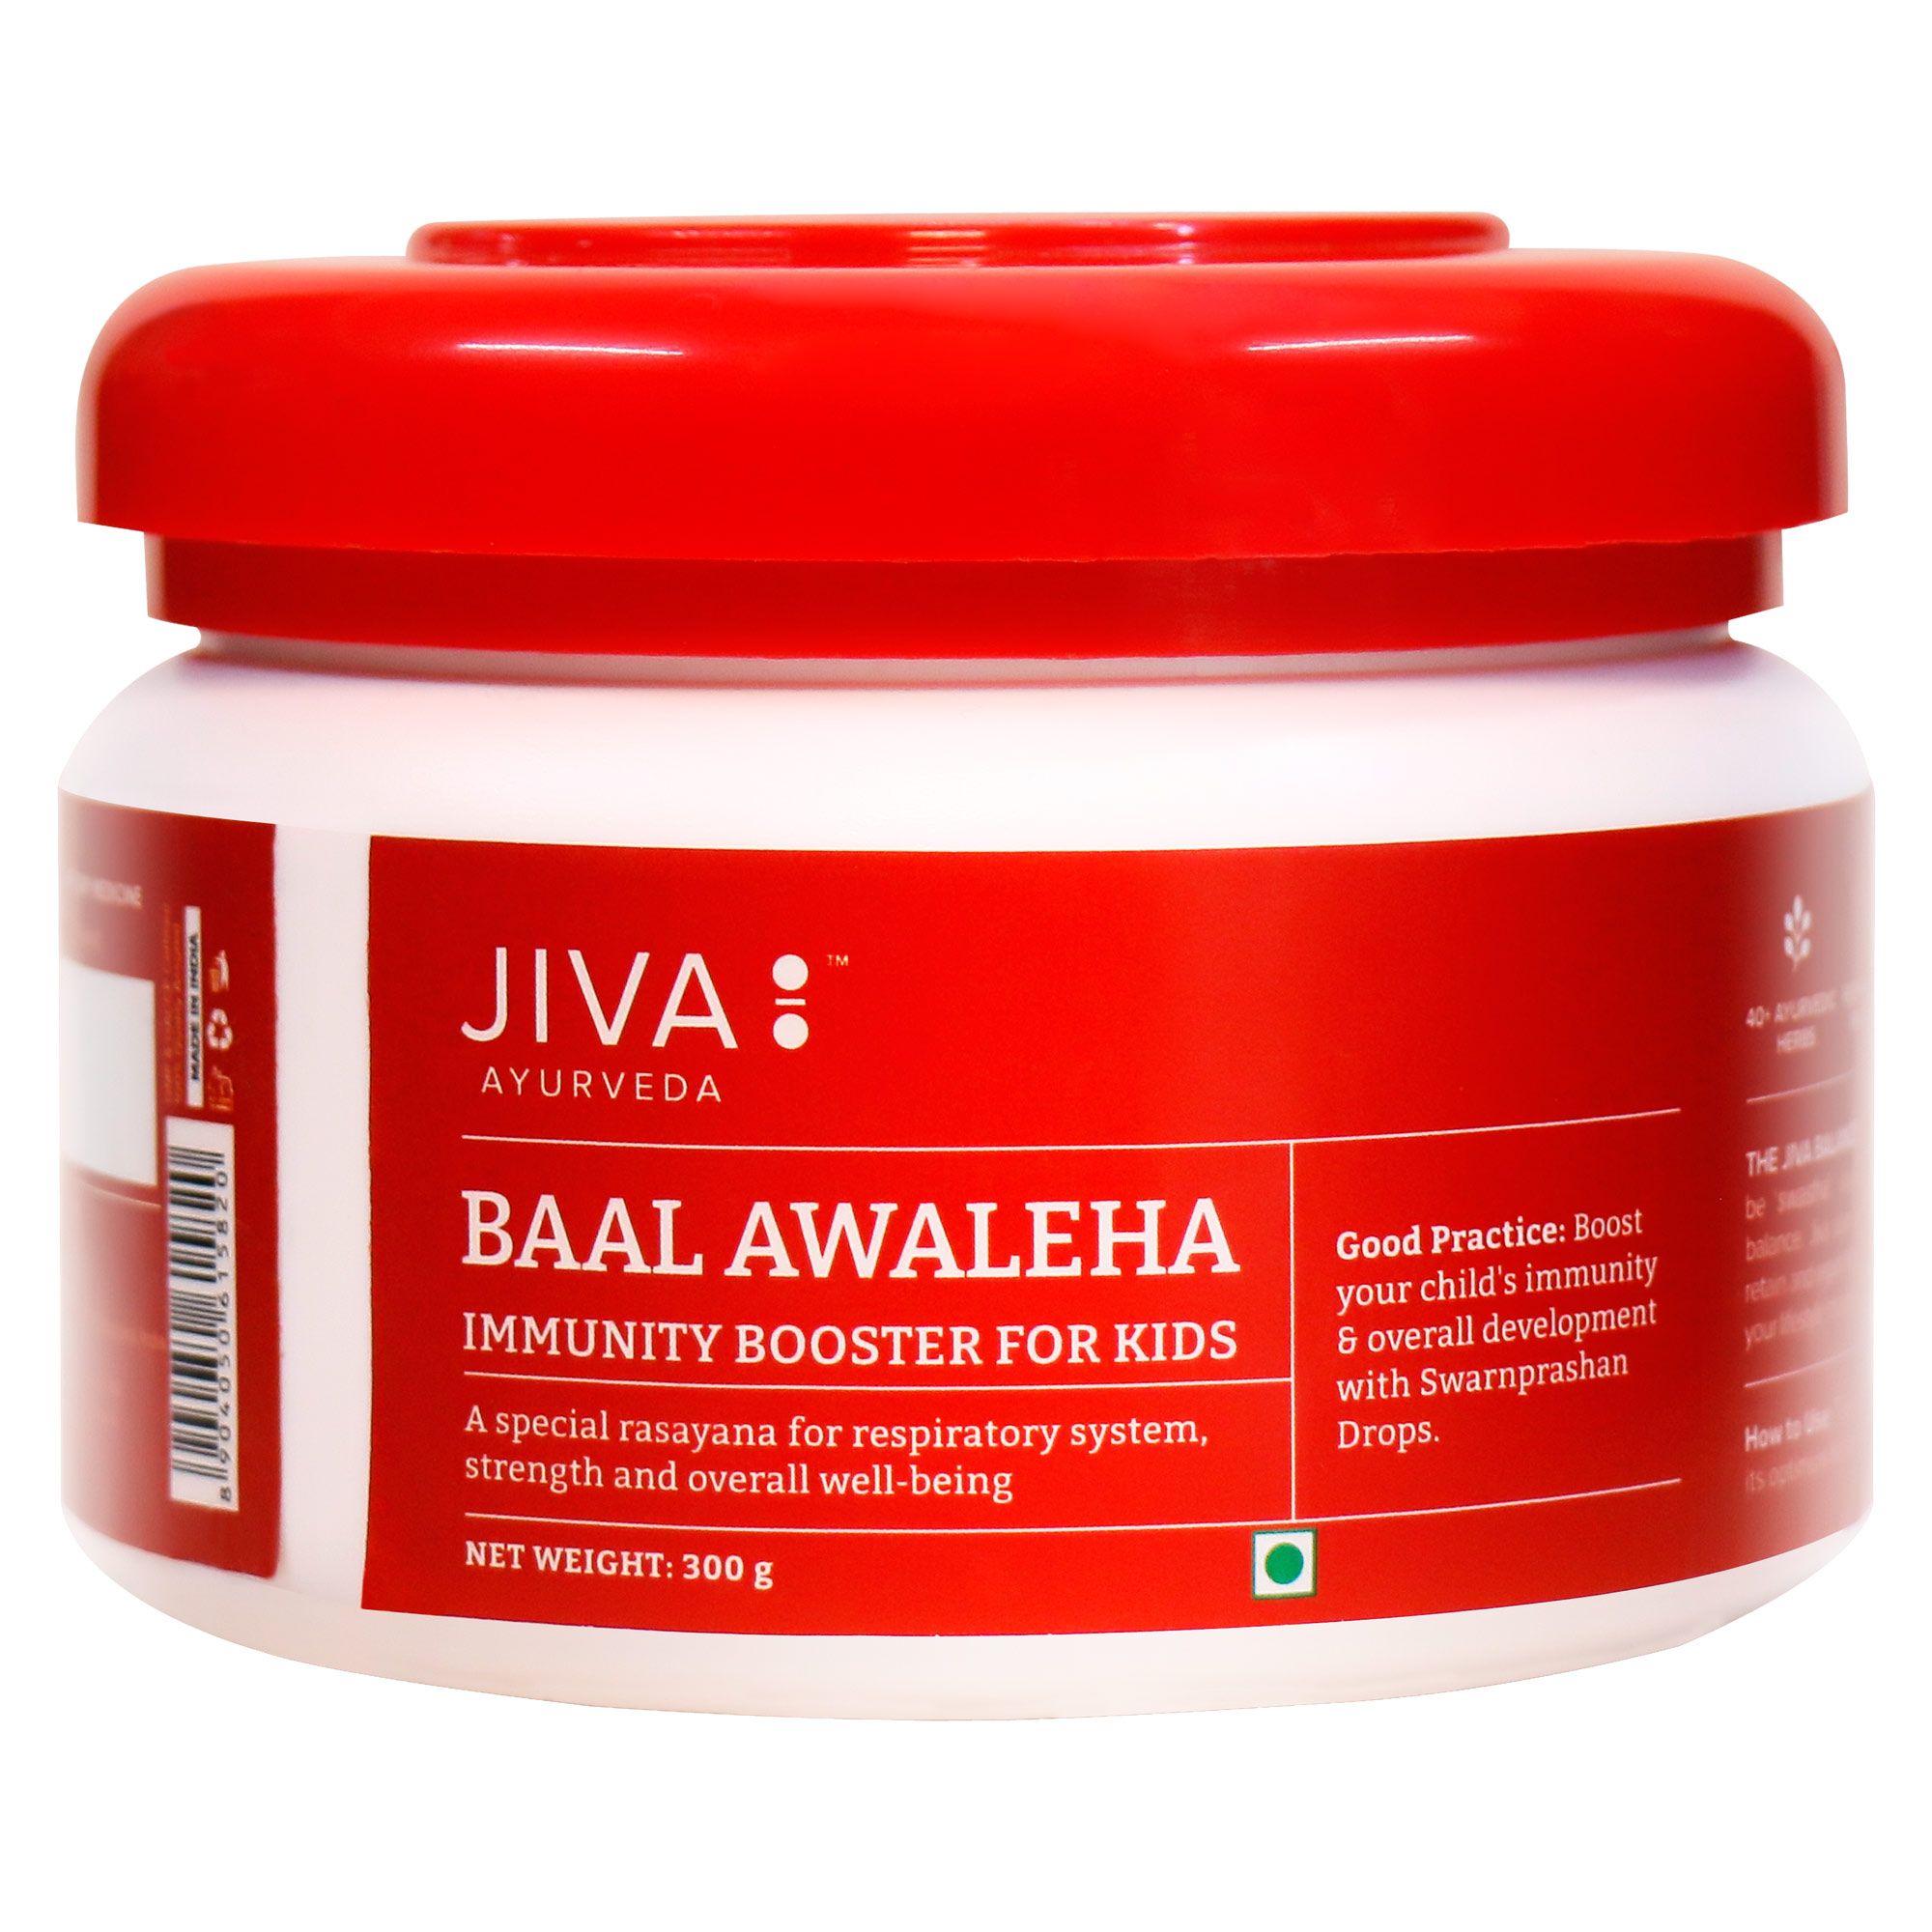 Buy Jiva Ayurveda Baal Awaleha at Best Price Online